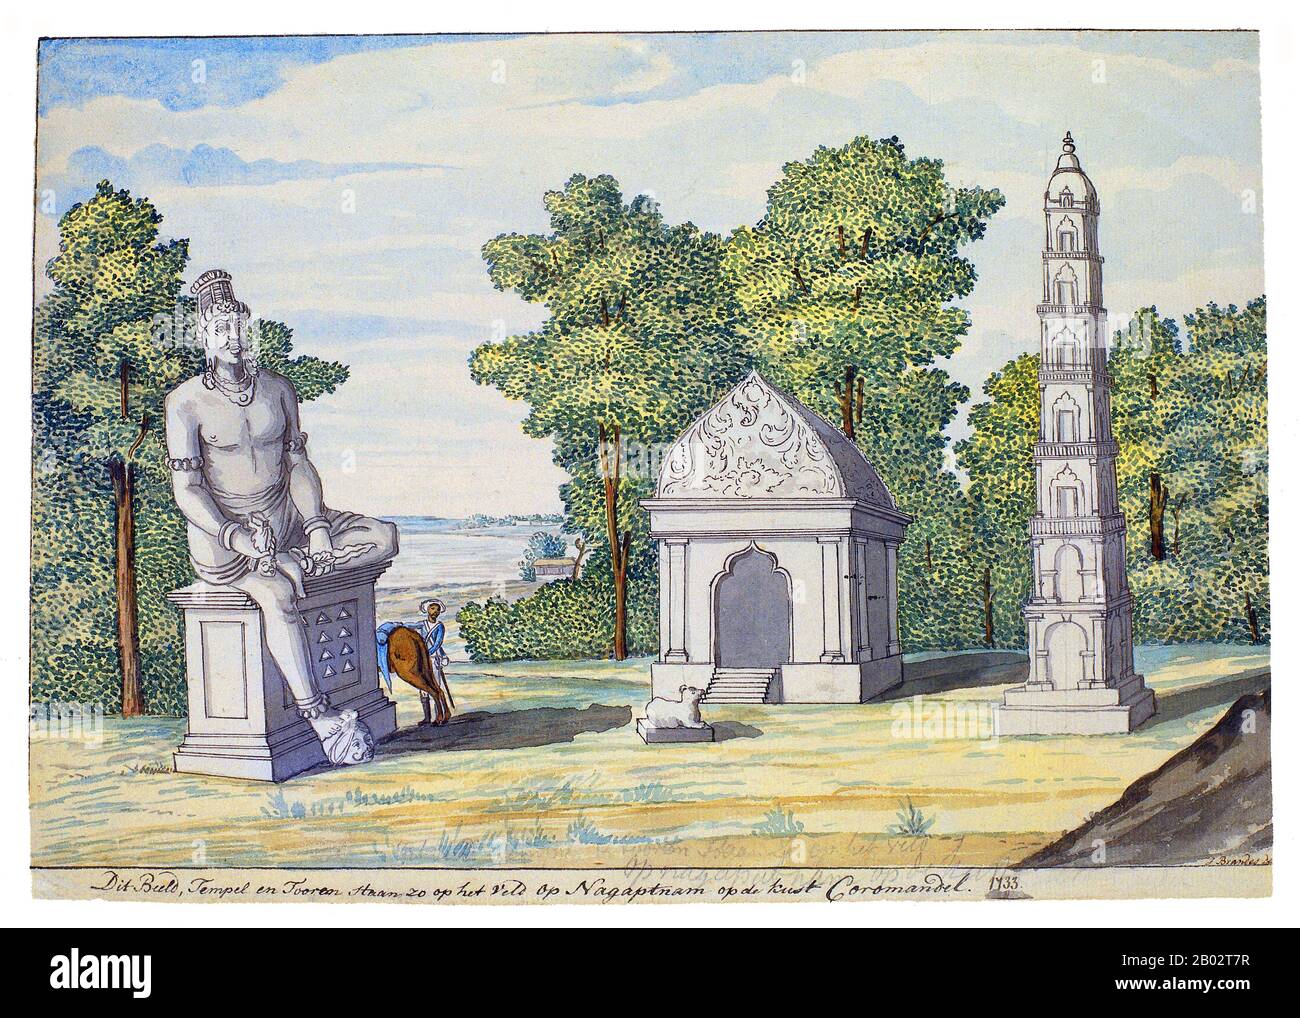 Questo dipinto può rappresentare l'ex Chudamani Vihara, un vihara buddista (monastero) a Nagapattinam, Tamil Nadu, India. Chudamani Vihara è stato costruito nel 1006 CE dal re Srivijayan Sri Vijaya Maravijayattungavarman con il patrocinio di Rajaraja Chola. L'edificio vihara sopravvisse in condizioni dilapiderate fino al 1867, quando i missionari gesuiti lo demolirono. Dal 1856 circa 350 bronzi di Buddha sono stati trovati a Nagapattinam, che risale dal 11th al 16th secolo. Foto Stock